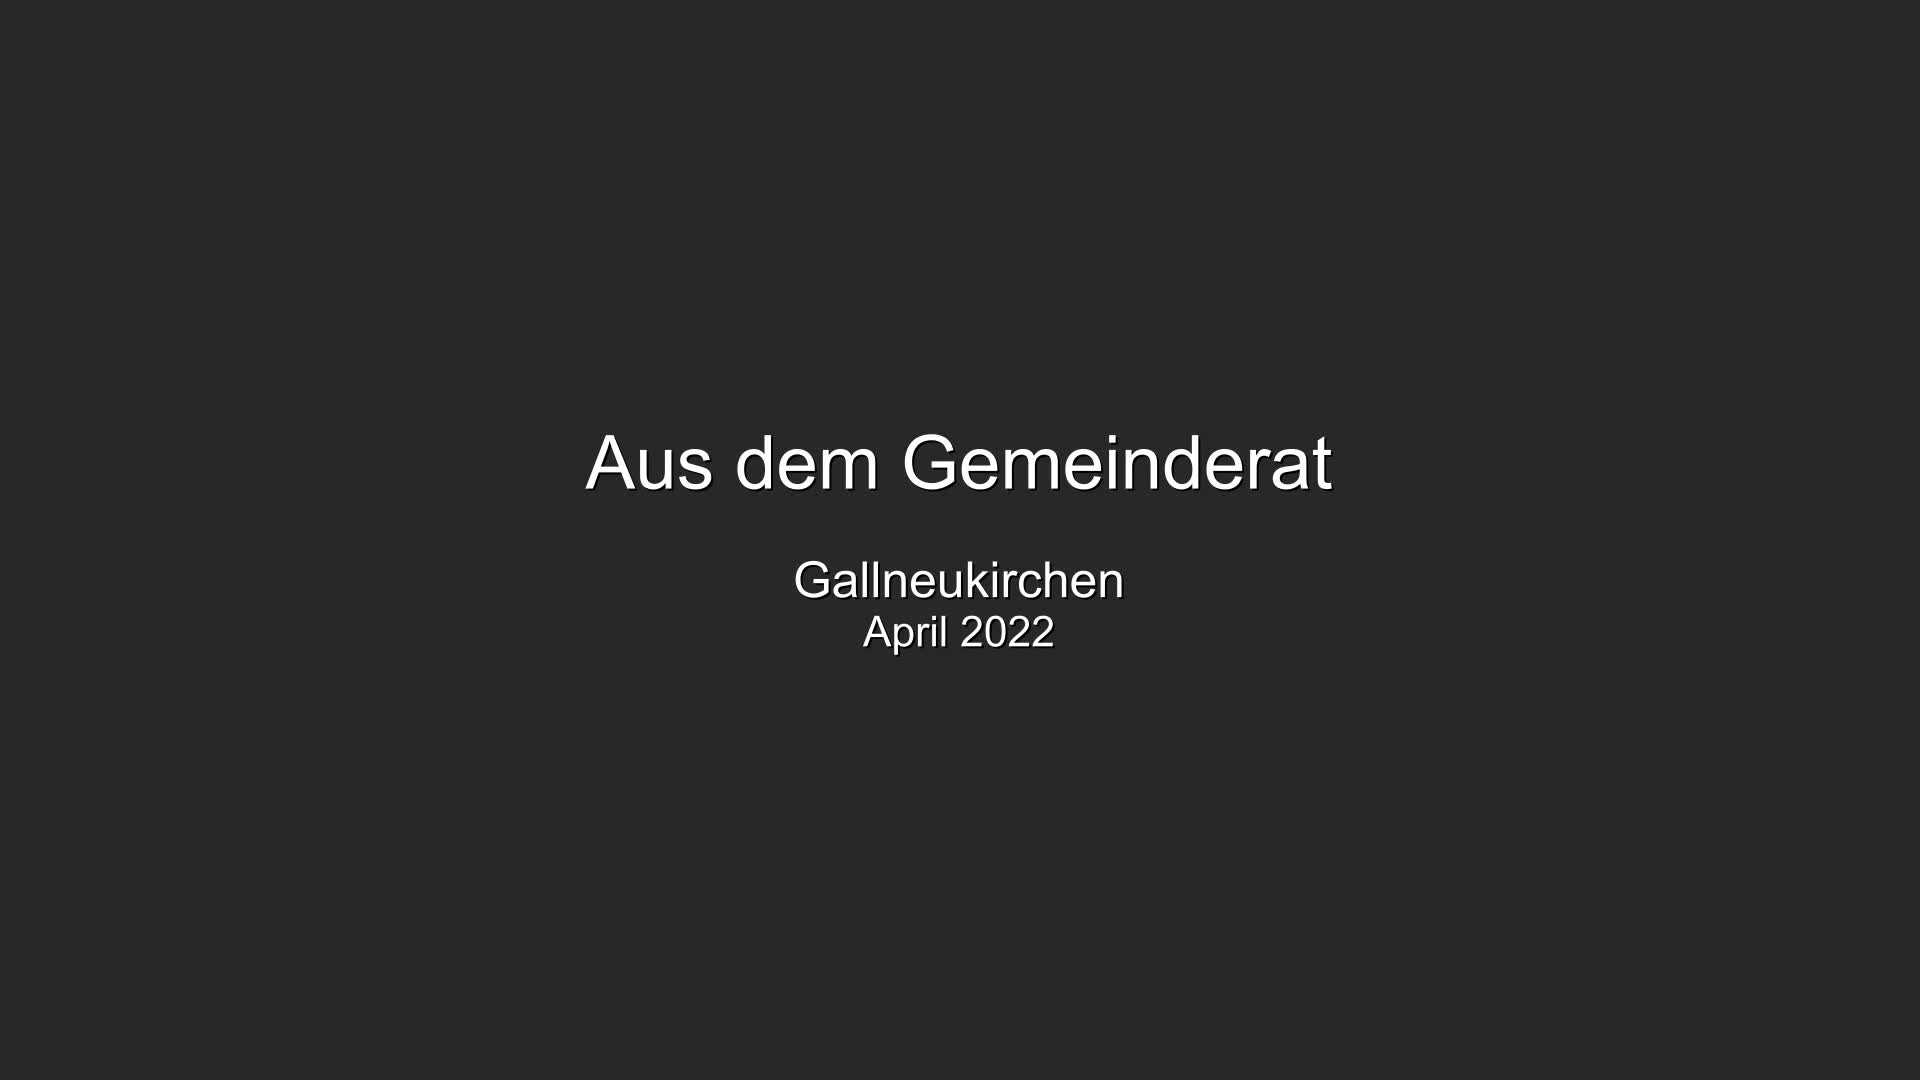 Aus dem Gemeinderat Gallneukirchen - April 2022